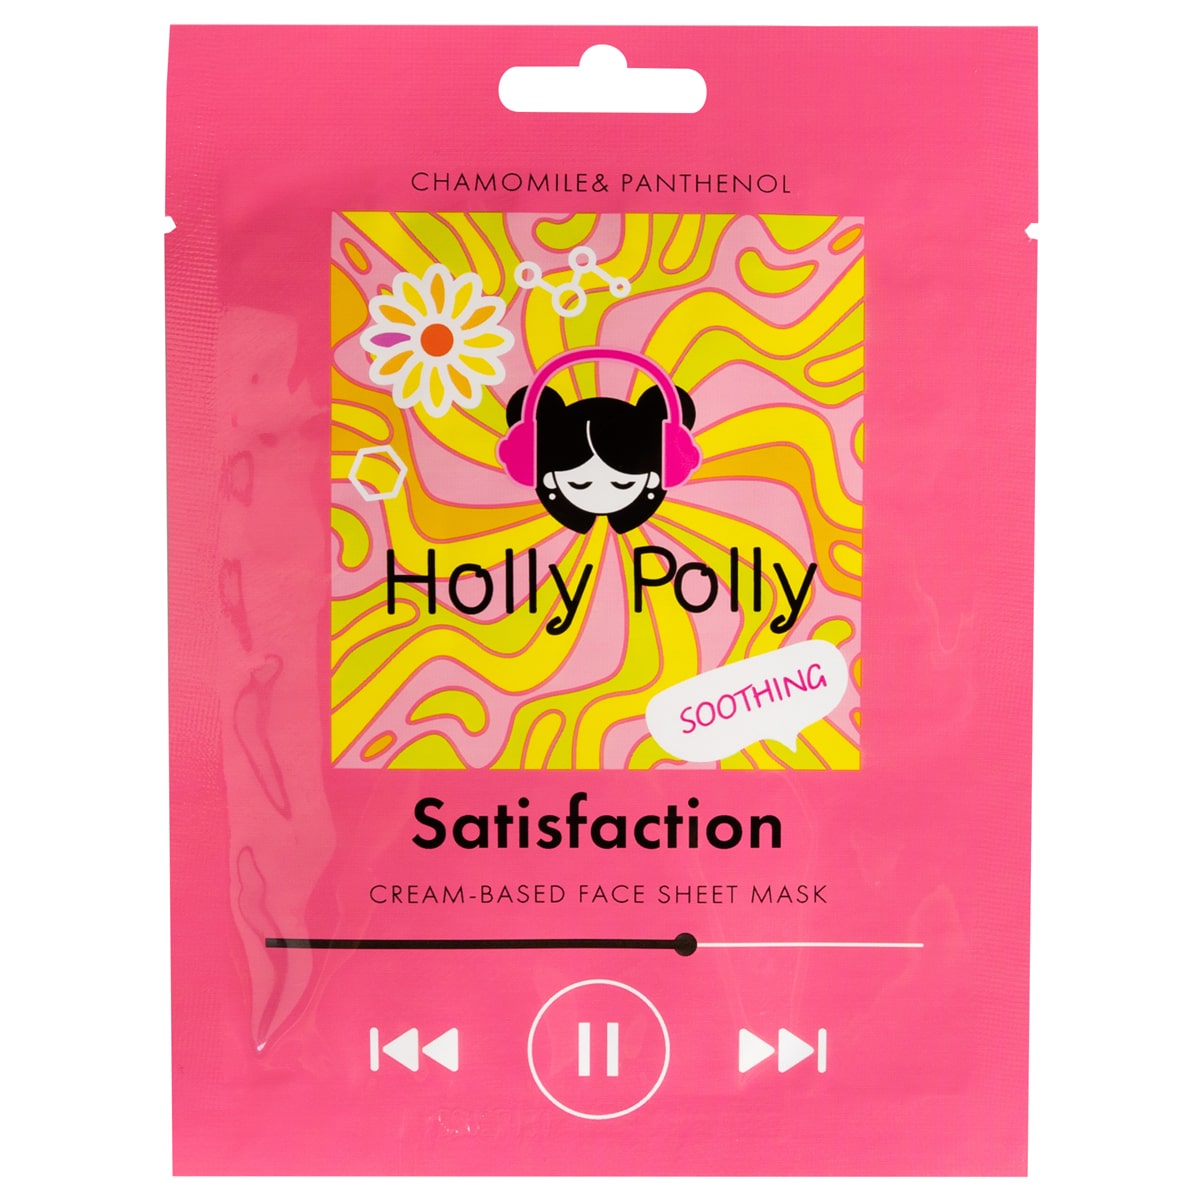 Holly Polly Успокаивающая тканевая маска с ромашкой и пантенолом Satisfaction на кремовой основе, 22 г (Holly Polly, Music Collection)